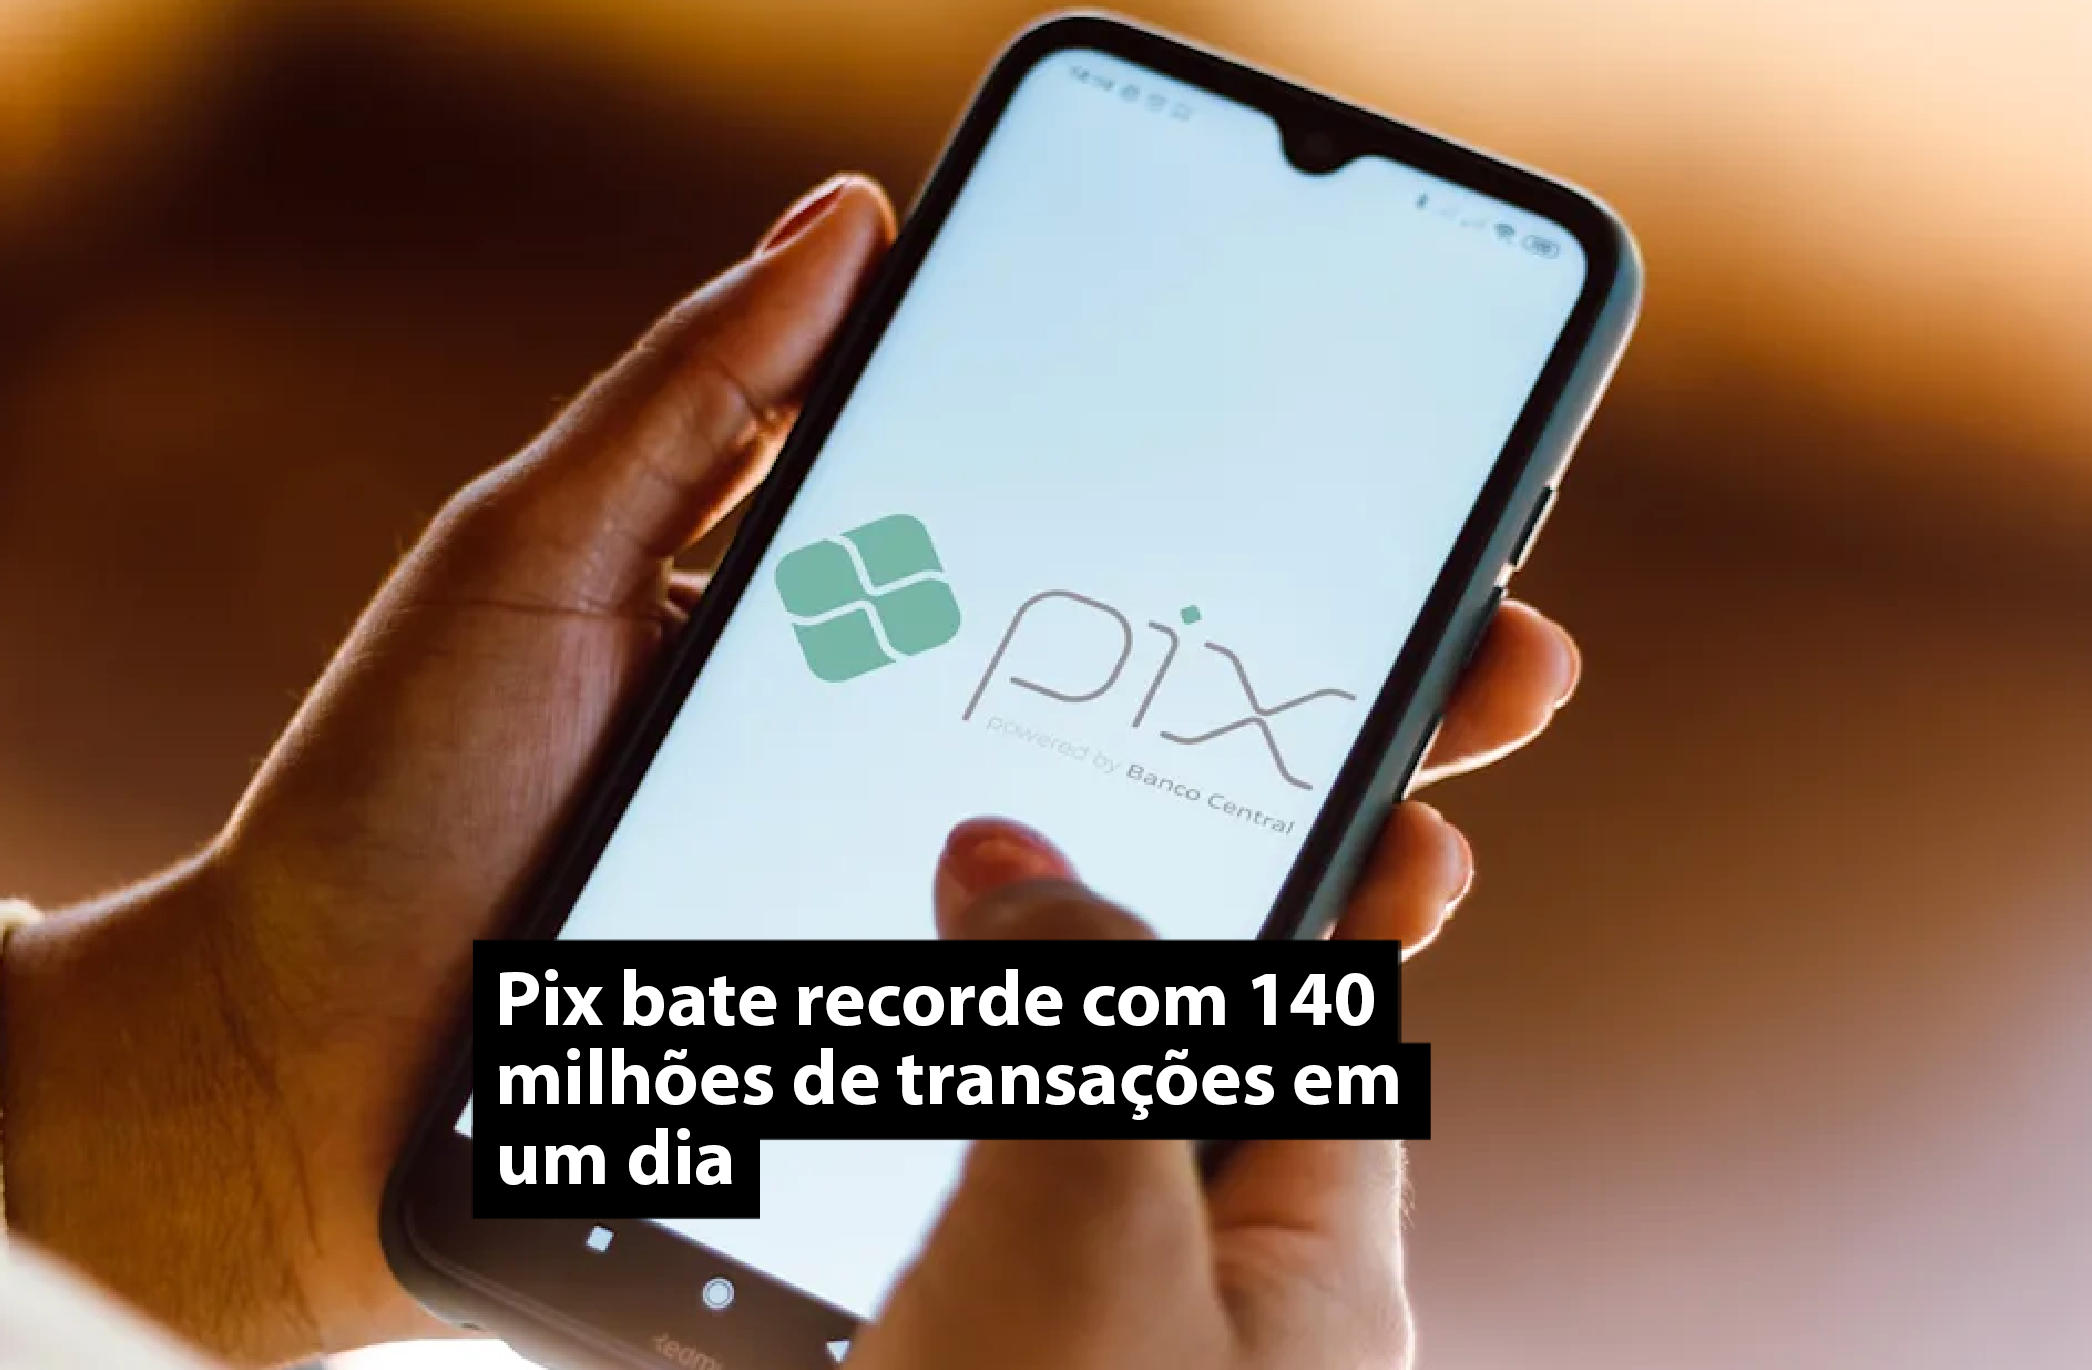 Pix bate recorde com 140 milhões de transações em um dia